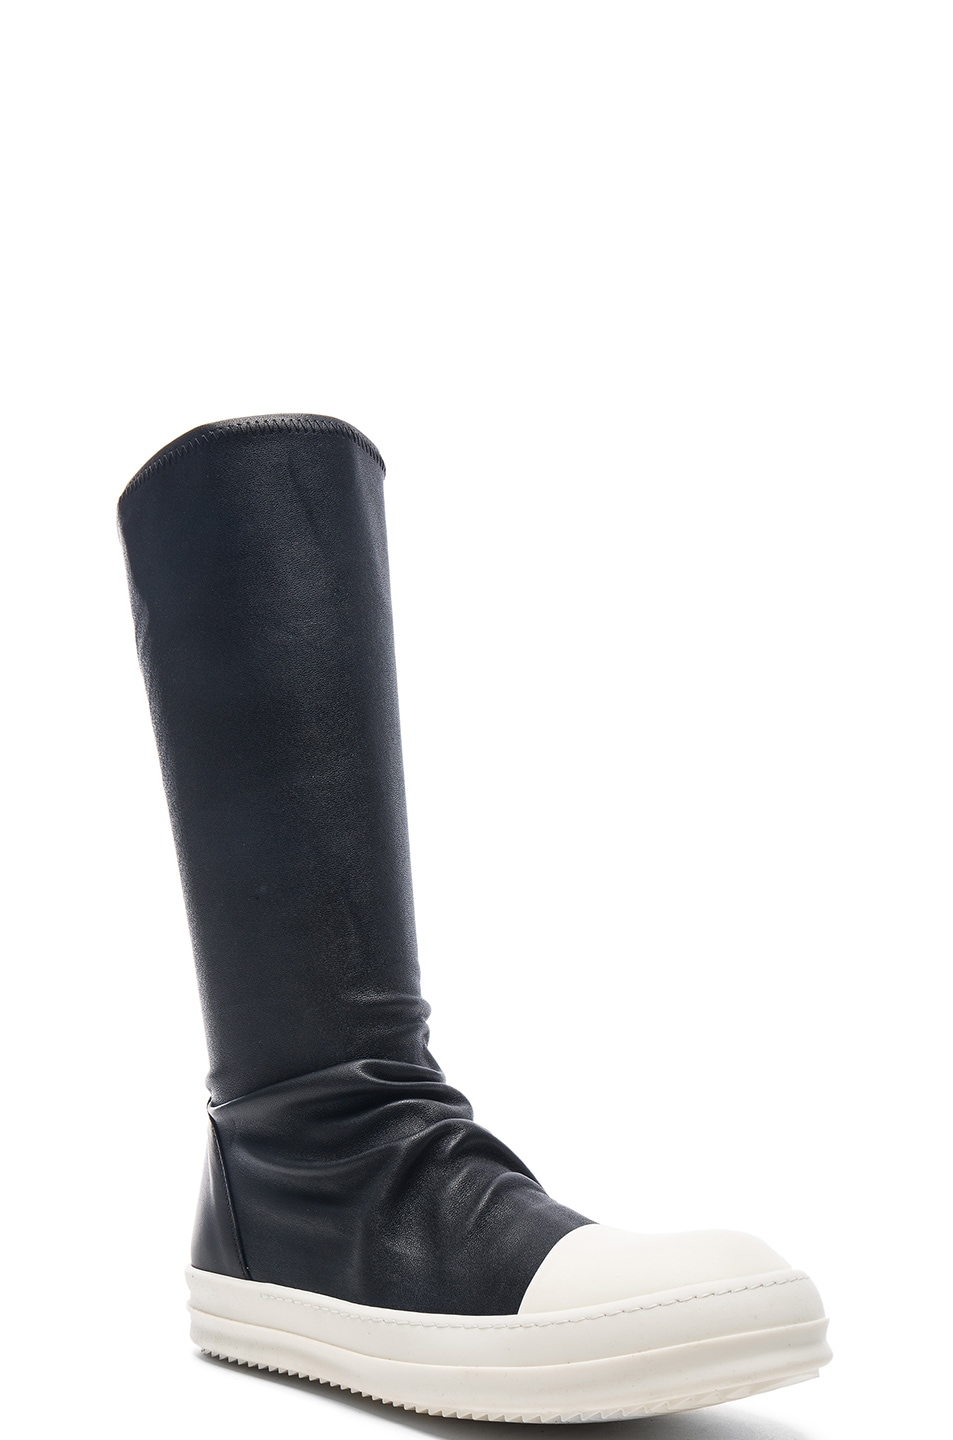 Image 1 of Rick Owens Sock Sneakers in Black & White